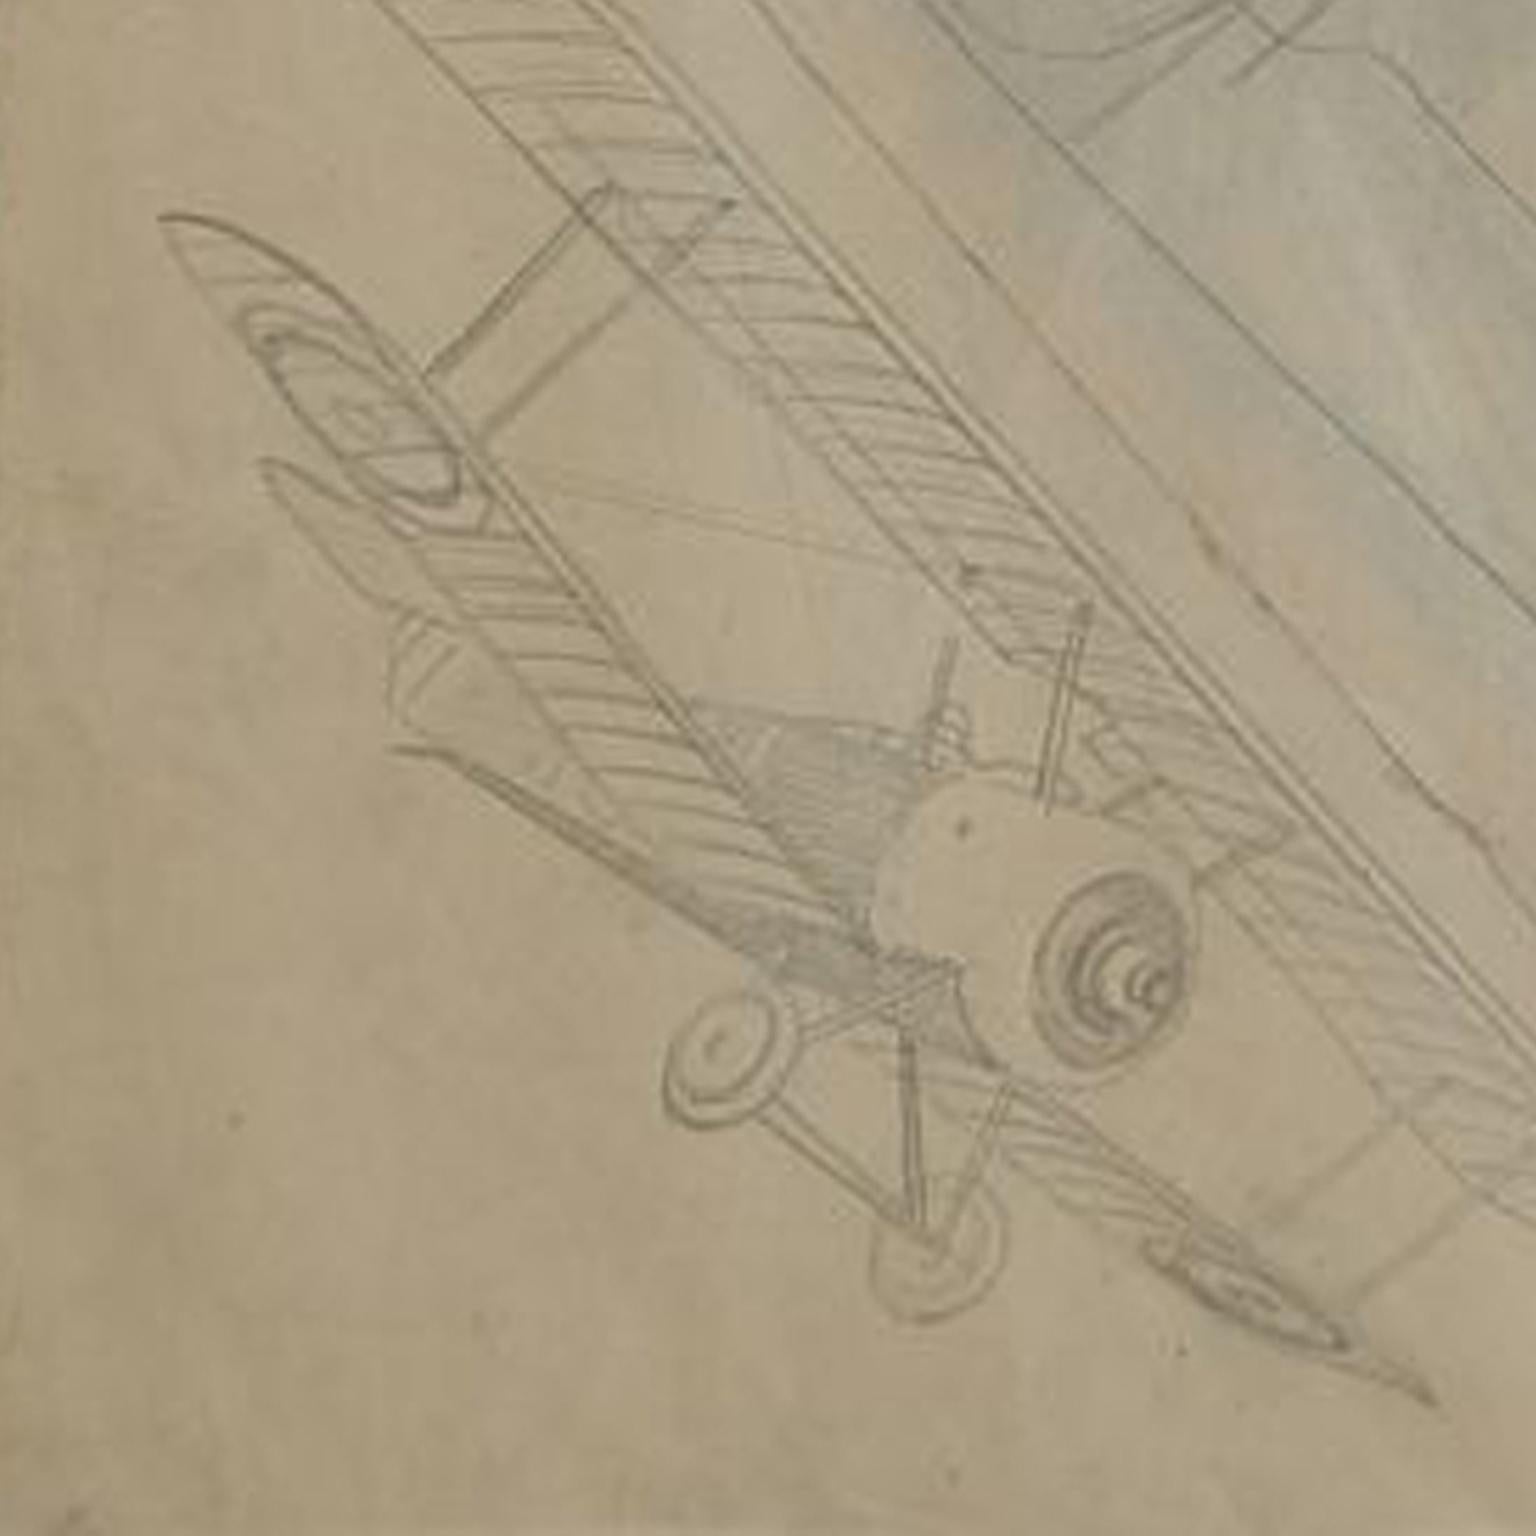 italien Drawing Représenting Three Different Biplanes Aircraft de la Première Guerre mondiale par Riccardo Cavigioli en vente